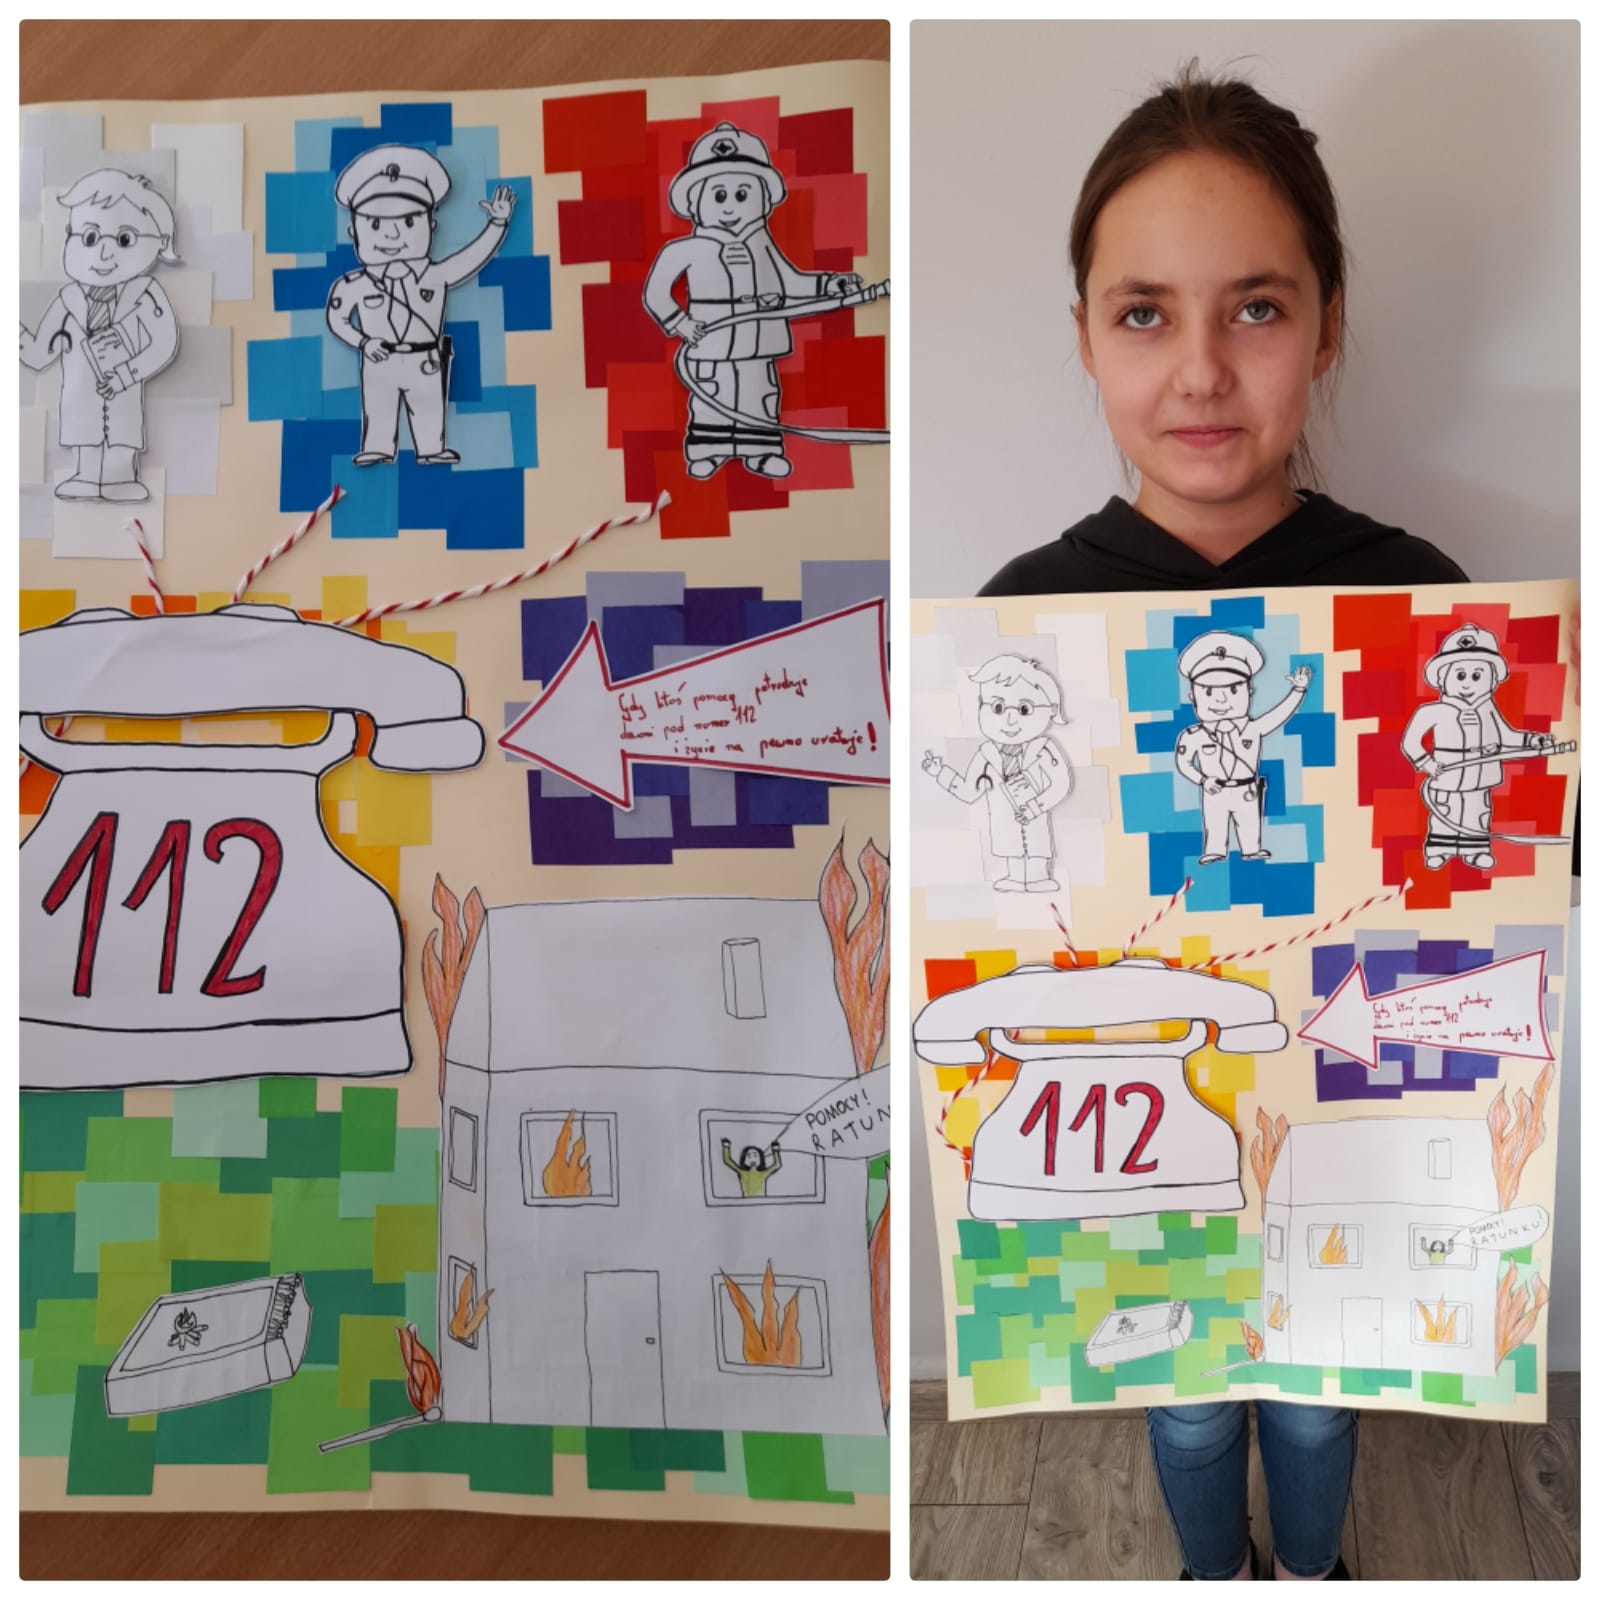 Praca konkursowa 112 ratuje życie i dziewczynka z plakatem